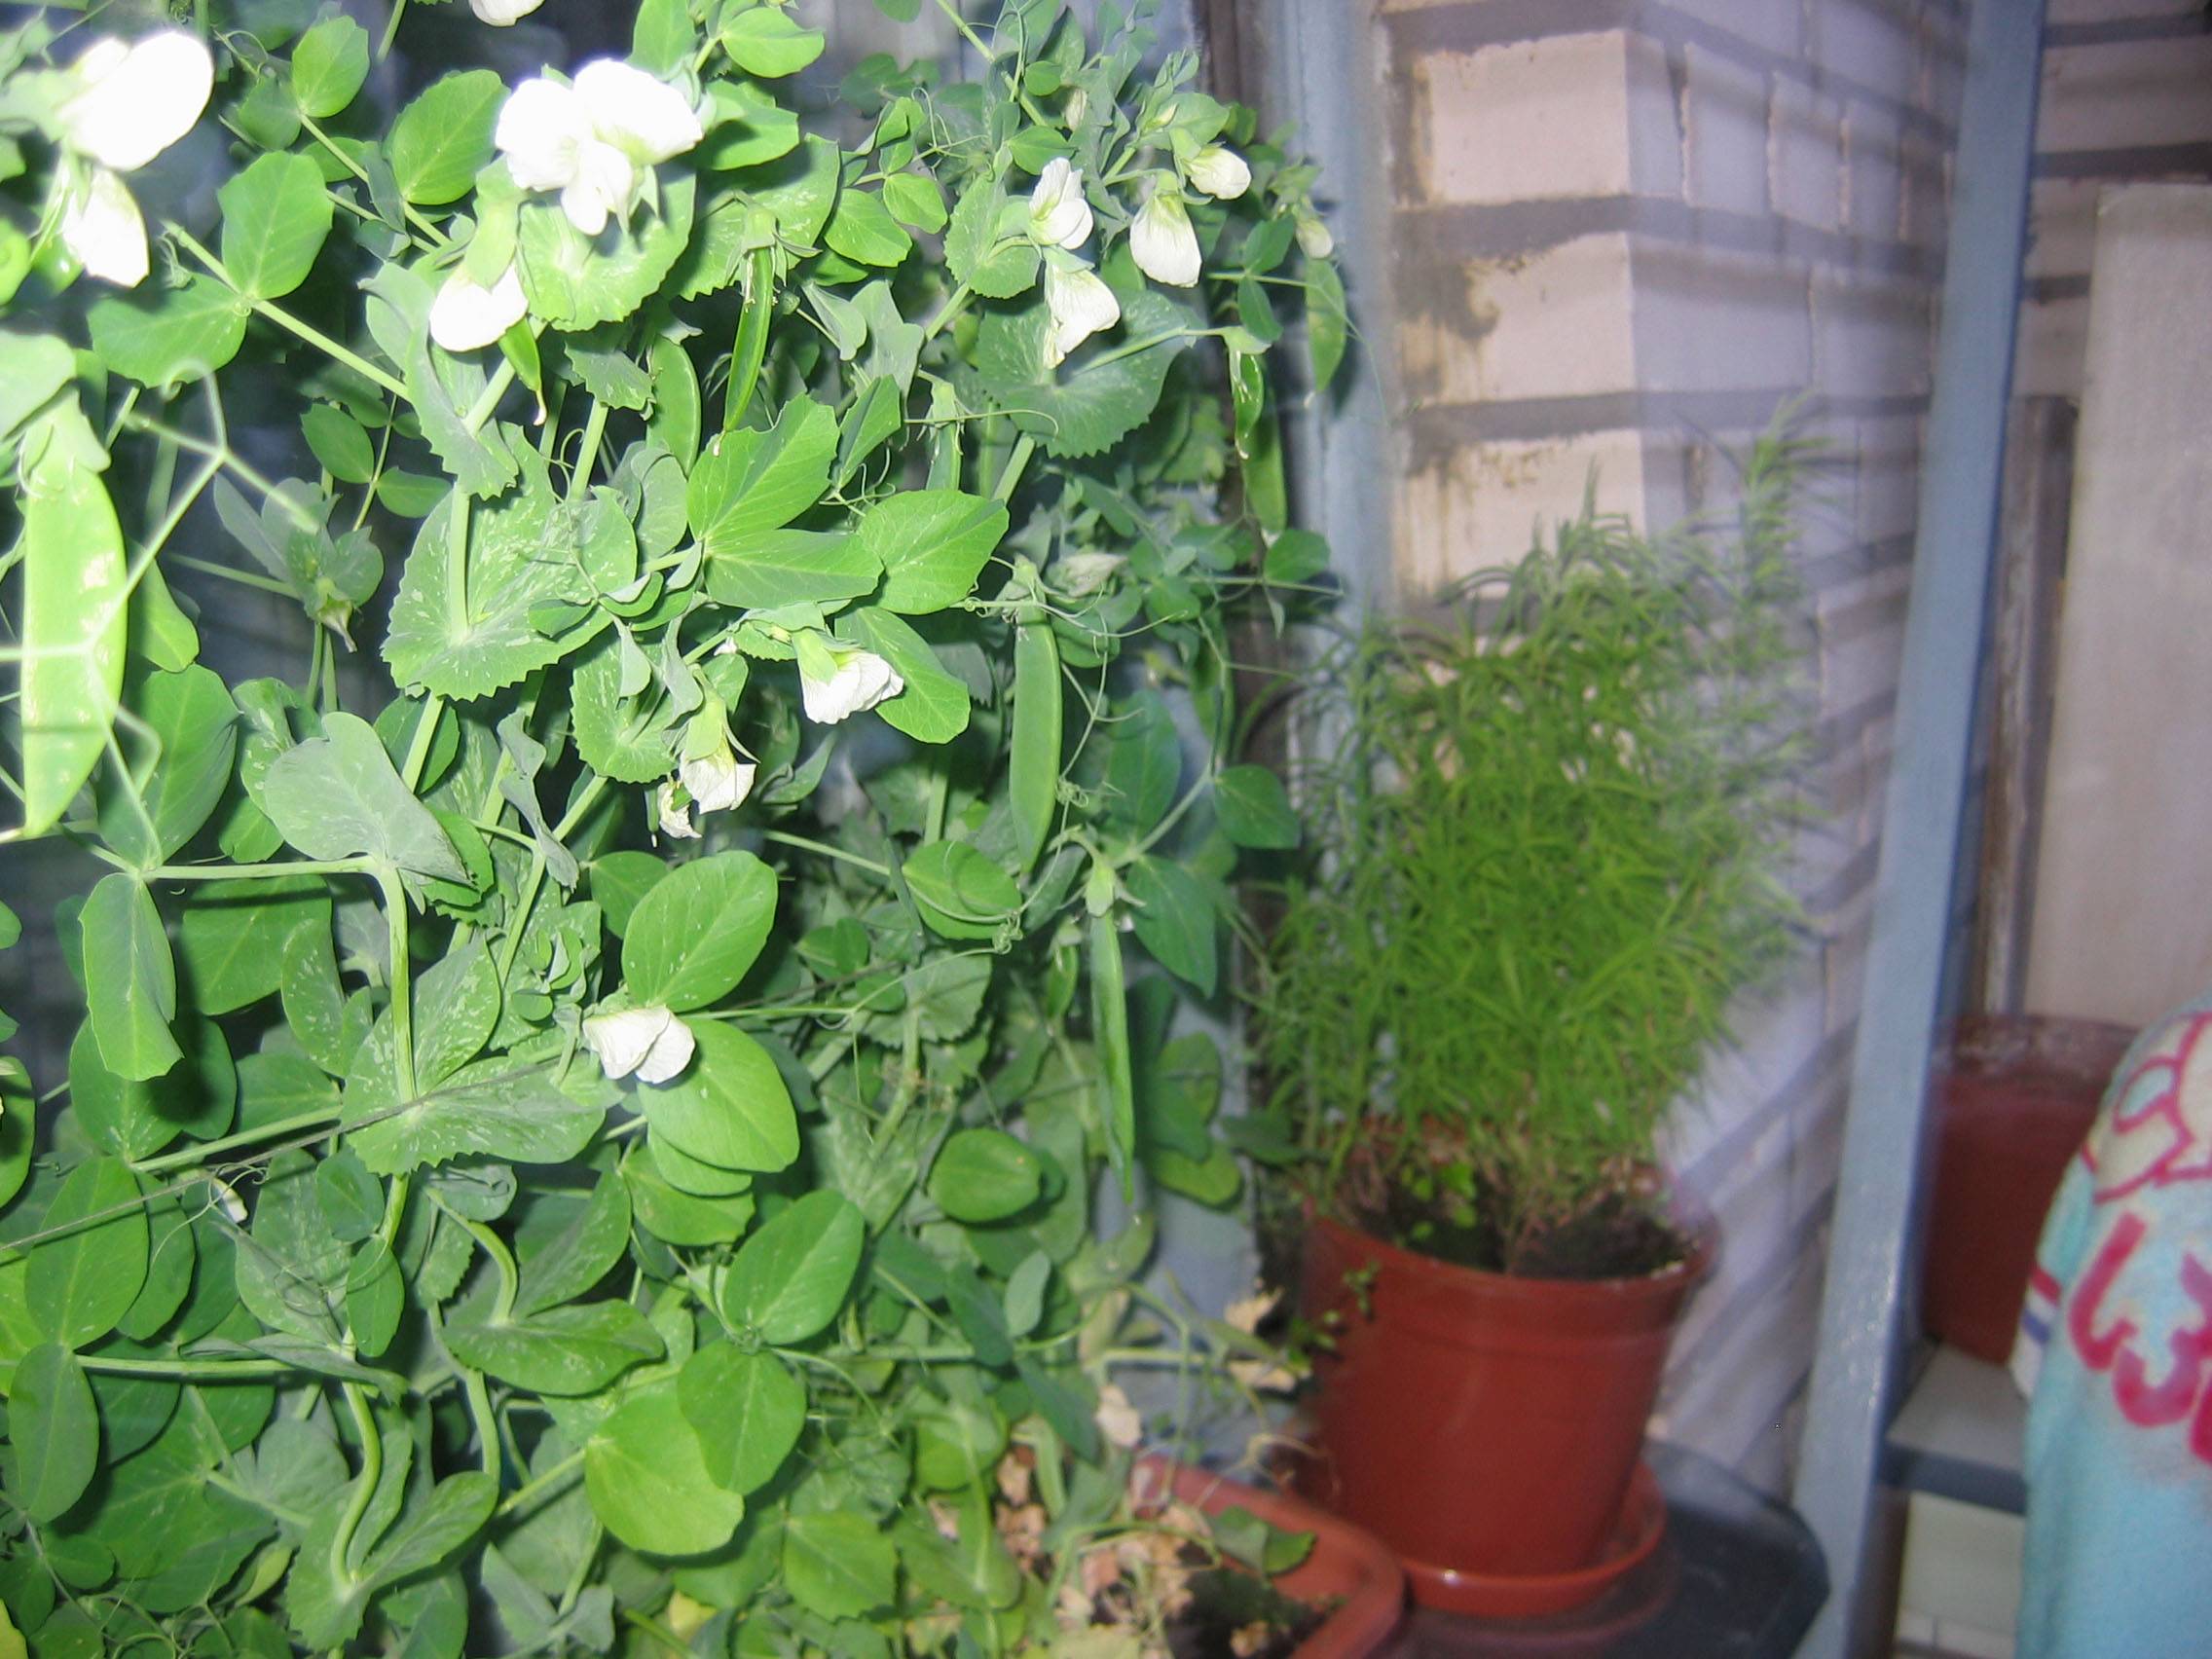 Как посадить горох в домашних условиях: выращивание на подоконнике и балконе